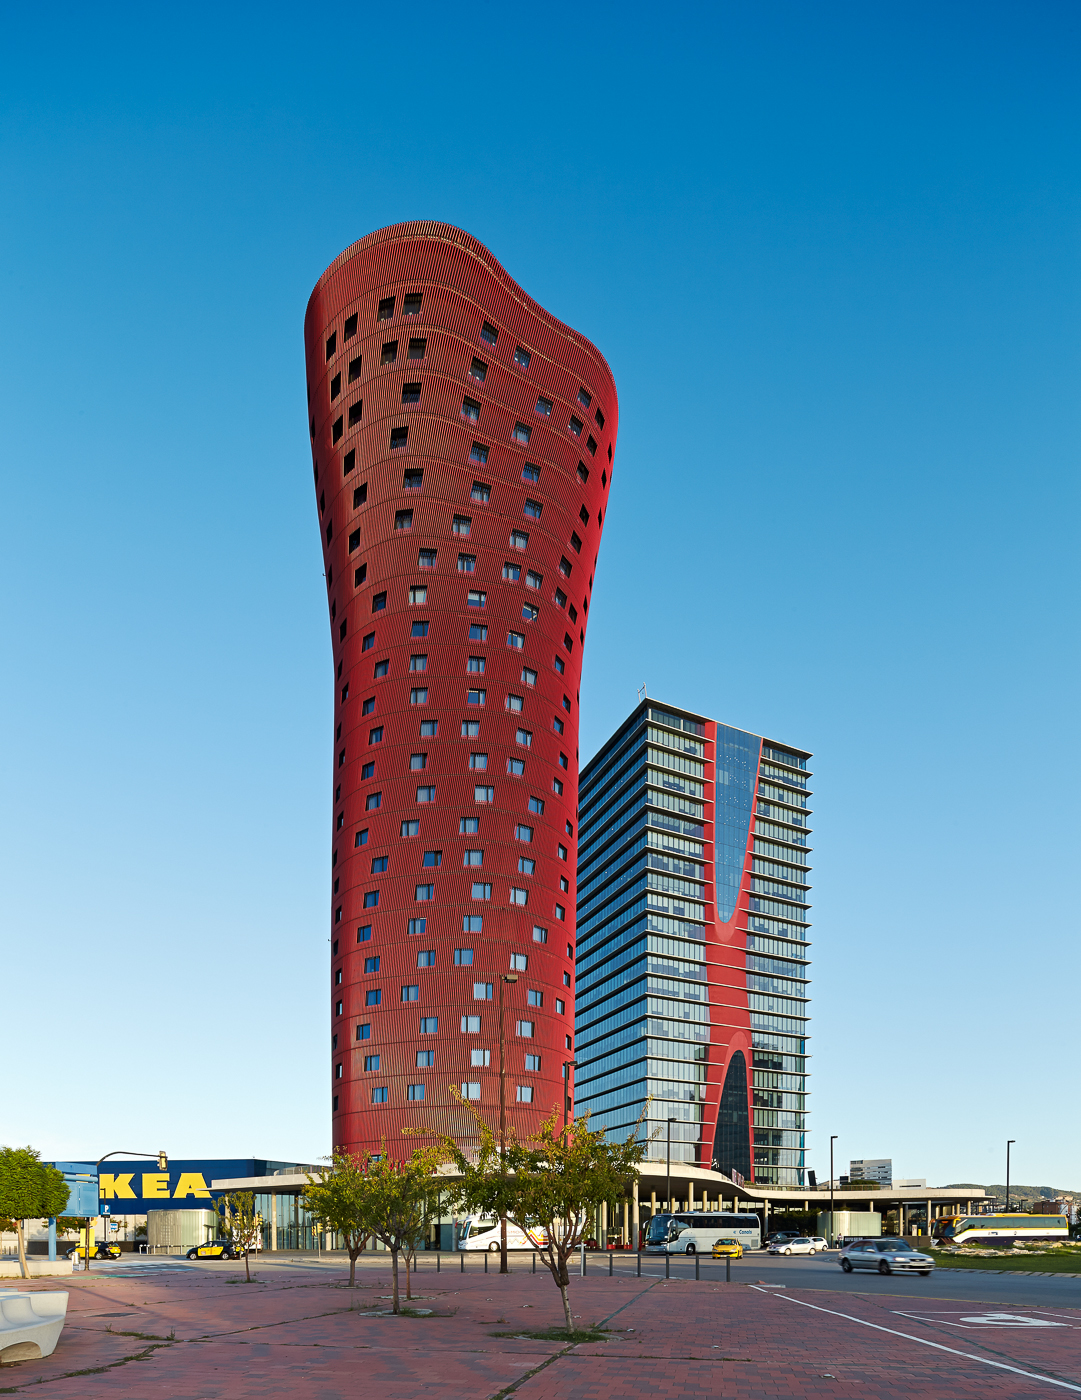 Porta Fira barcelona hotel Toyo Ito & Associates Architects